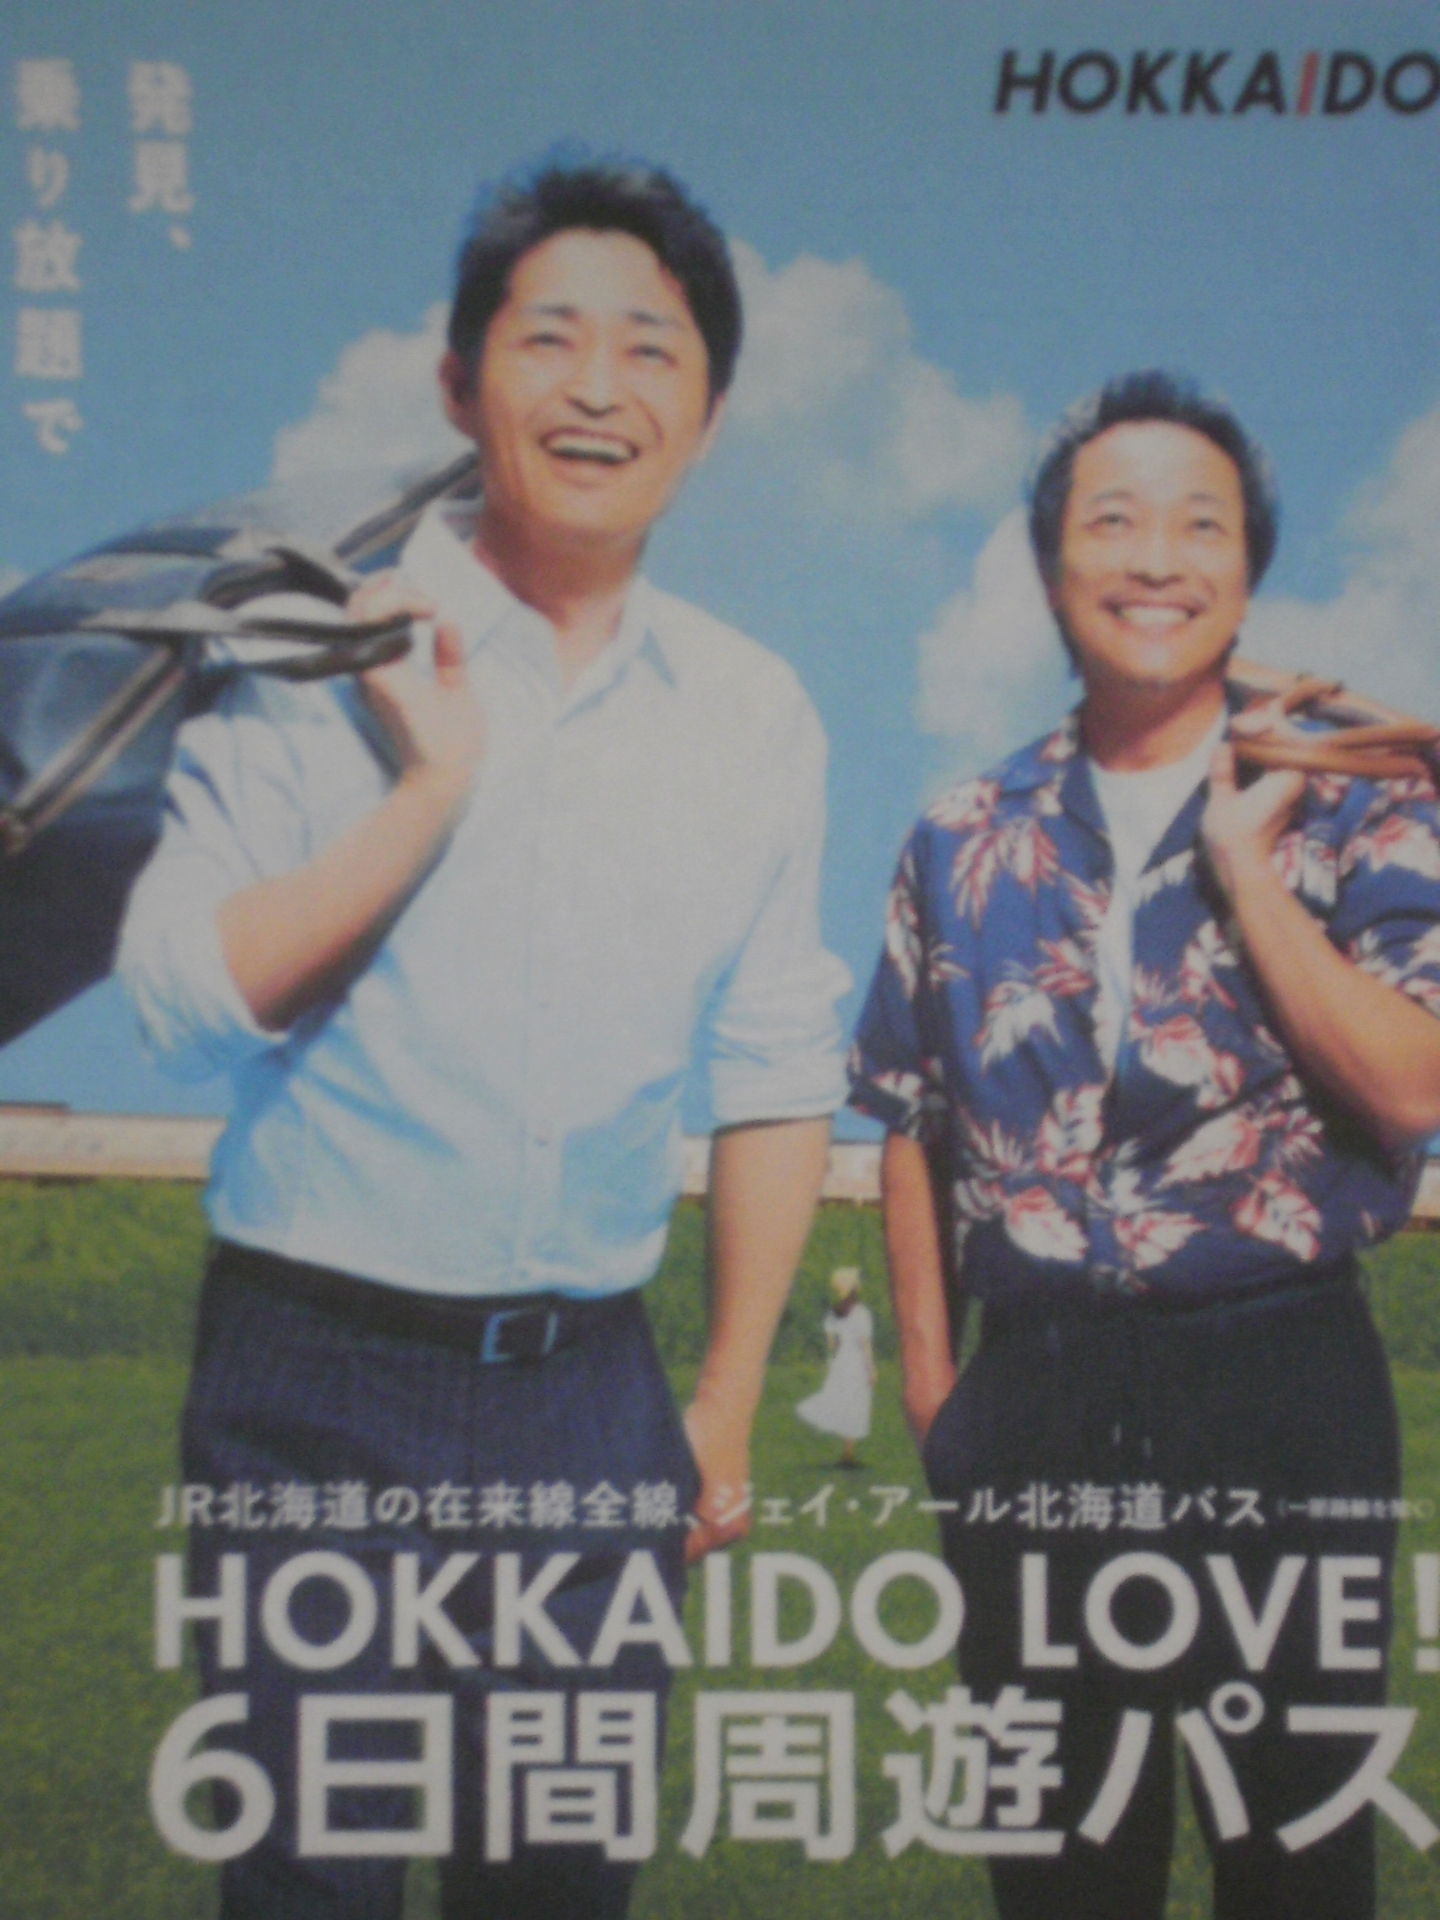 【限定SALE豊富な】HOKKAIDO LOVE!6日間周遊パス JR北海道 乗車券